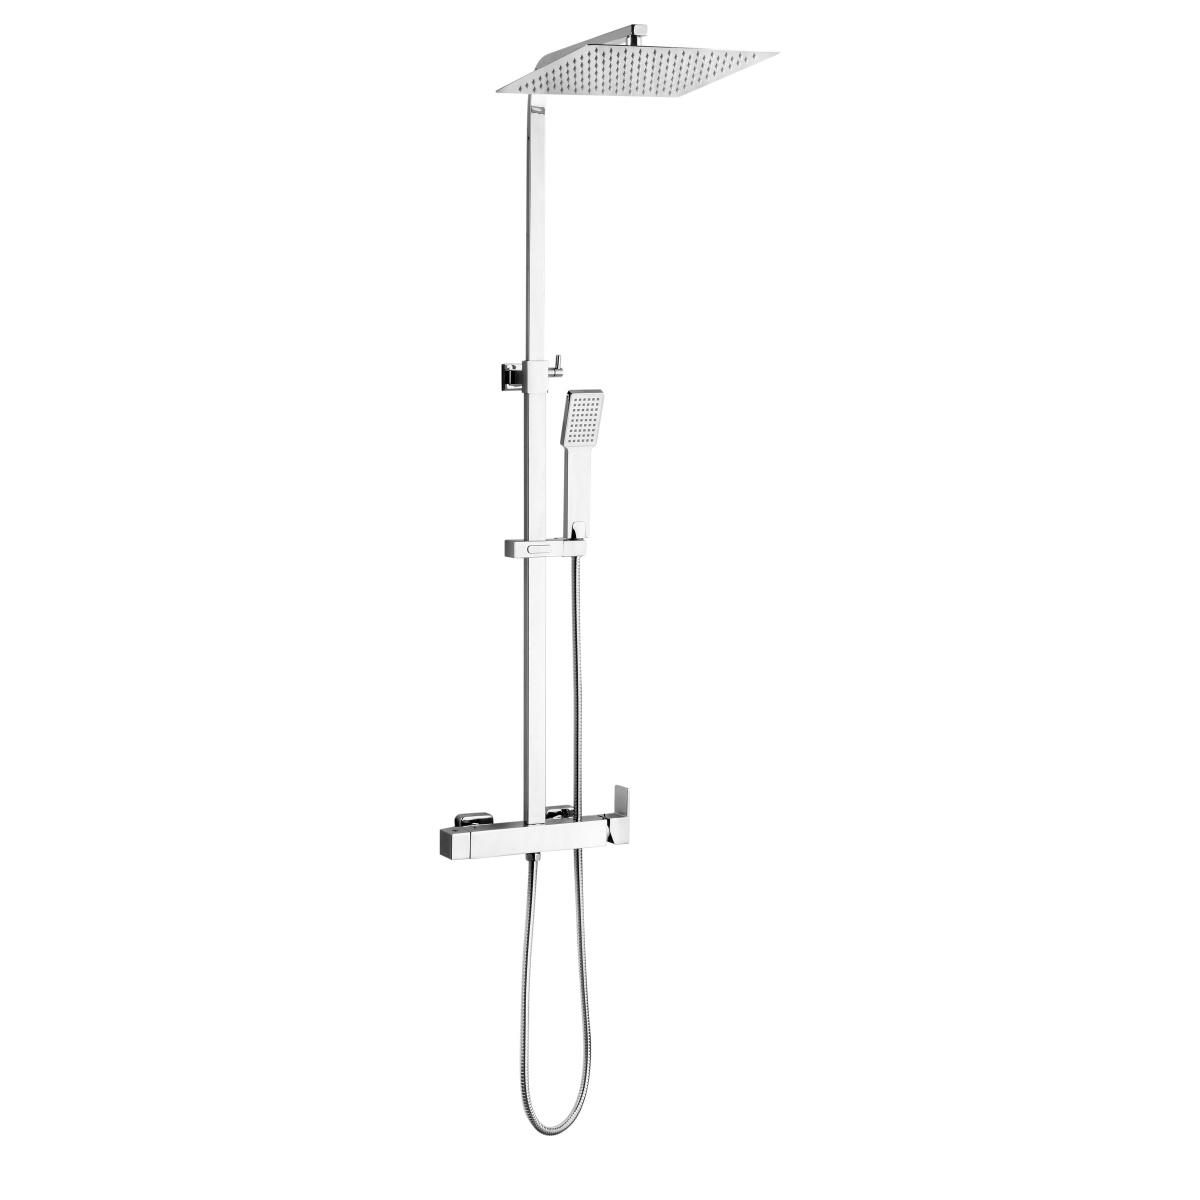 YS34185 Négyszögletes zuhanyoszlop, esőzuhanyoszlop zuhanycsappal, állítható magasságú;